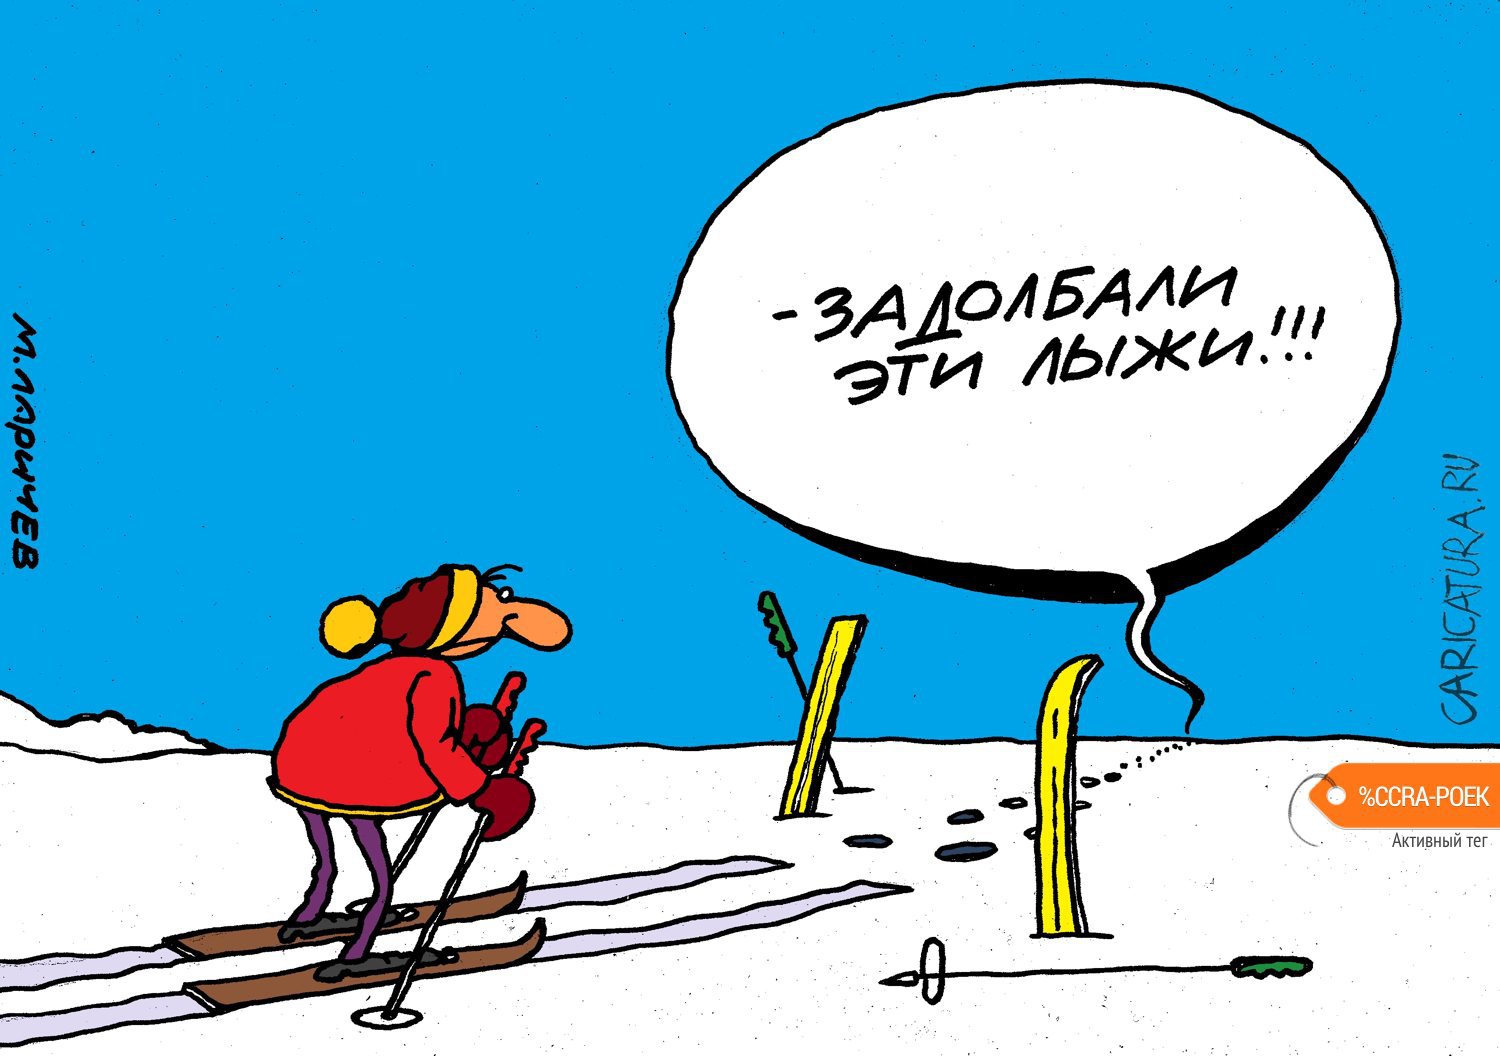 Карикатура "Лыжня", Михаил Ларичев